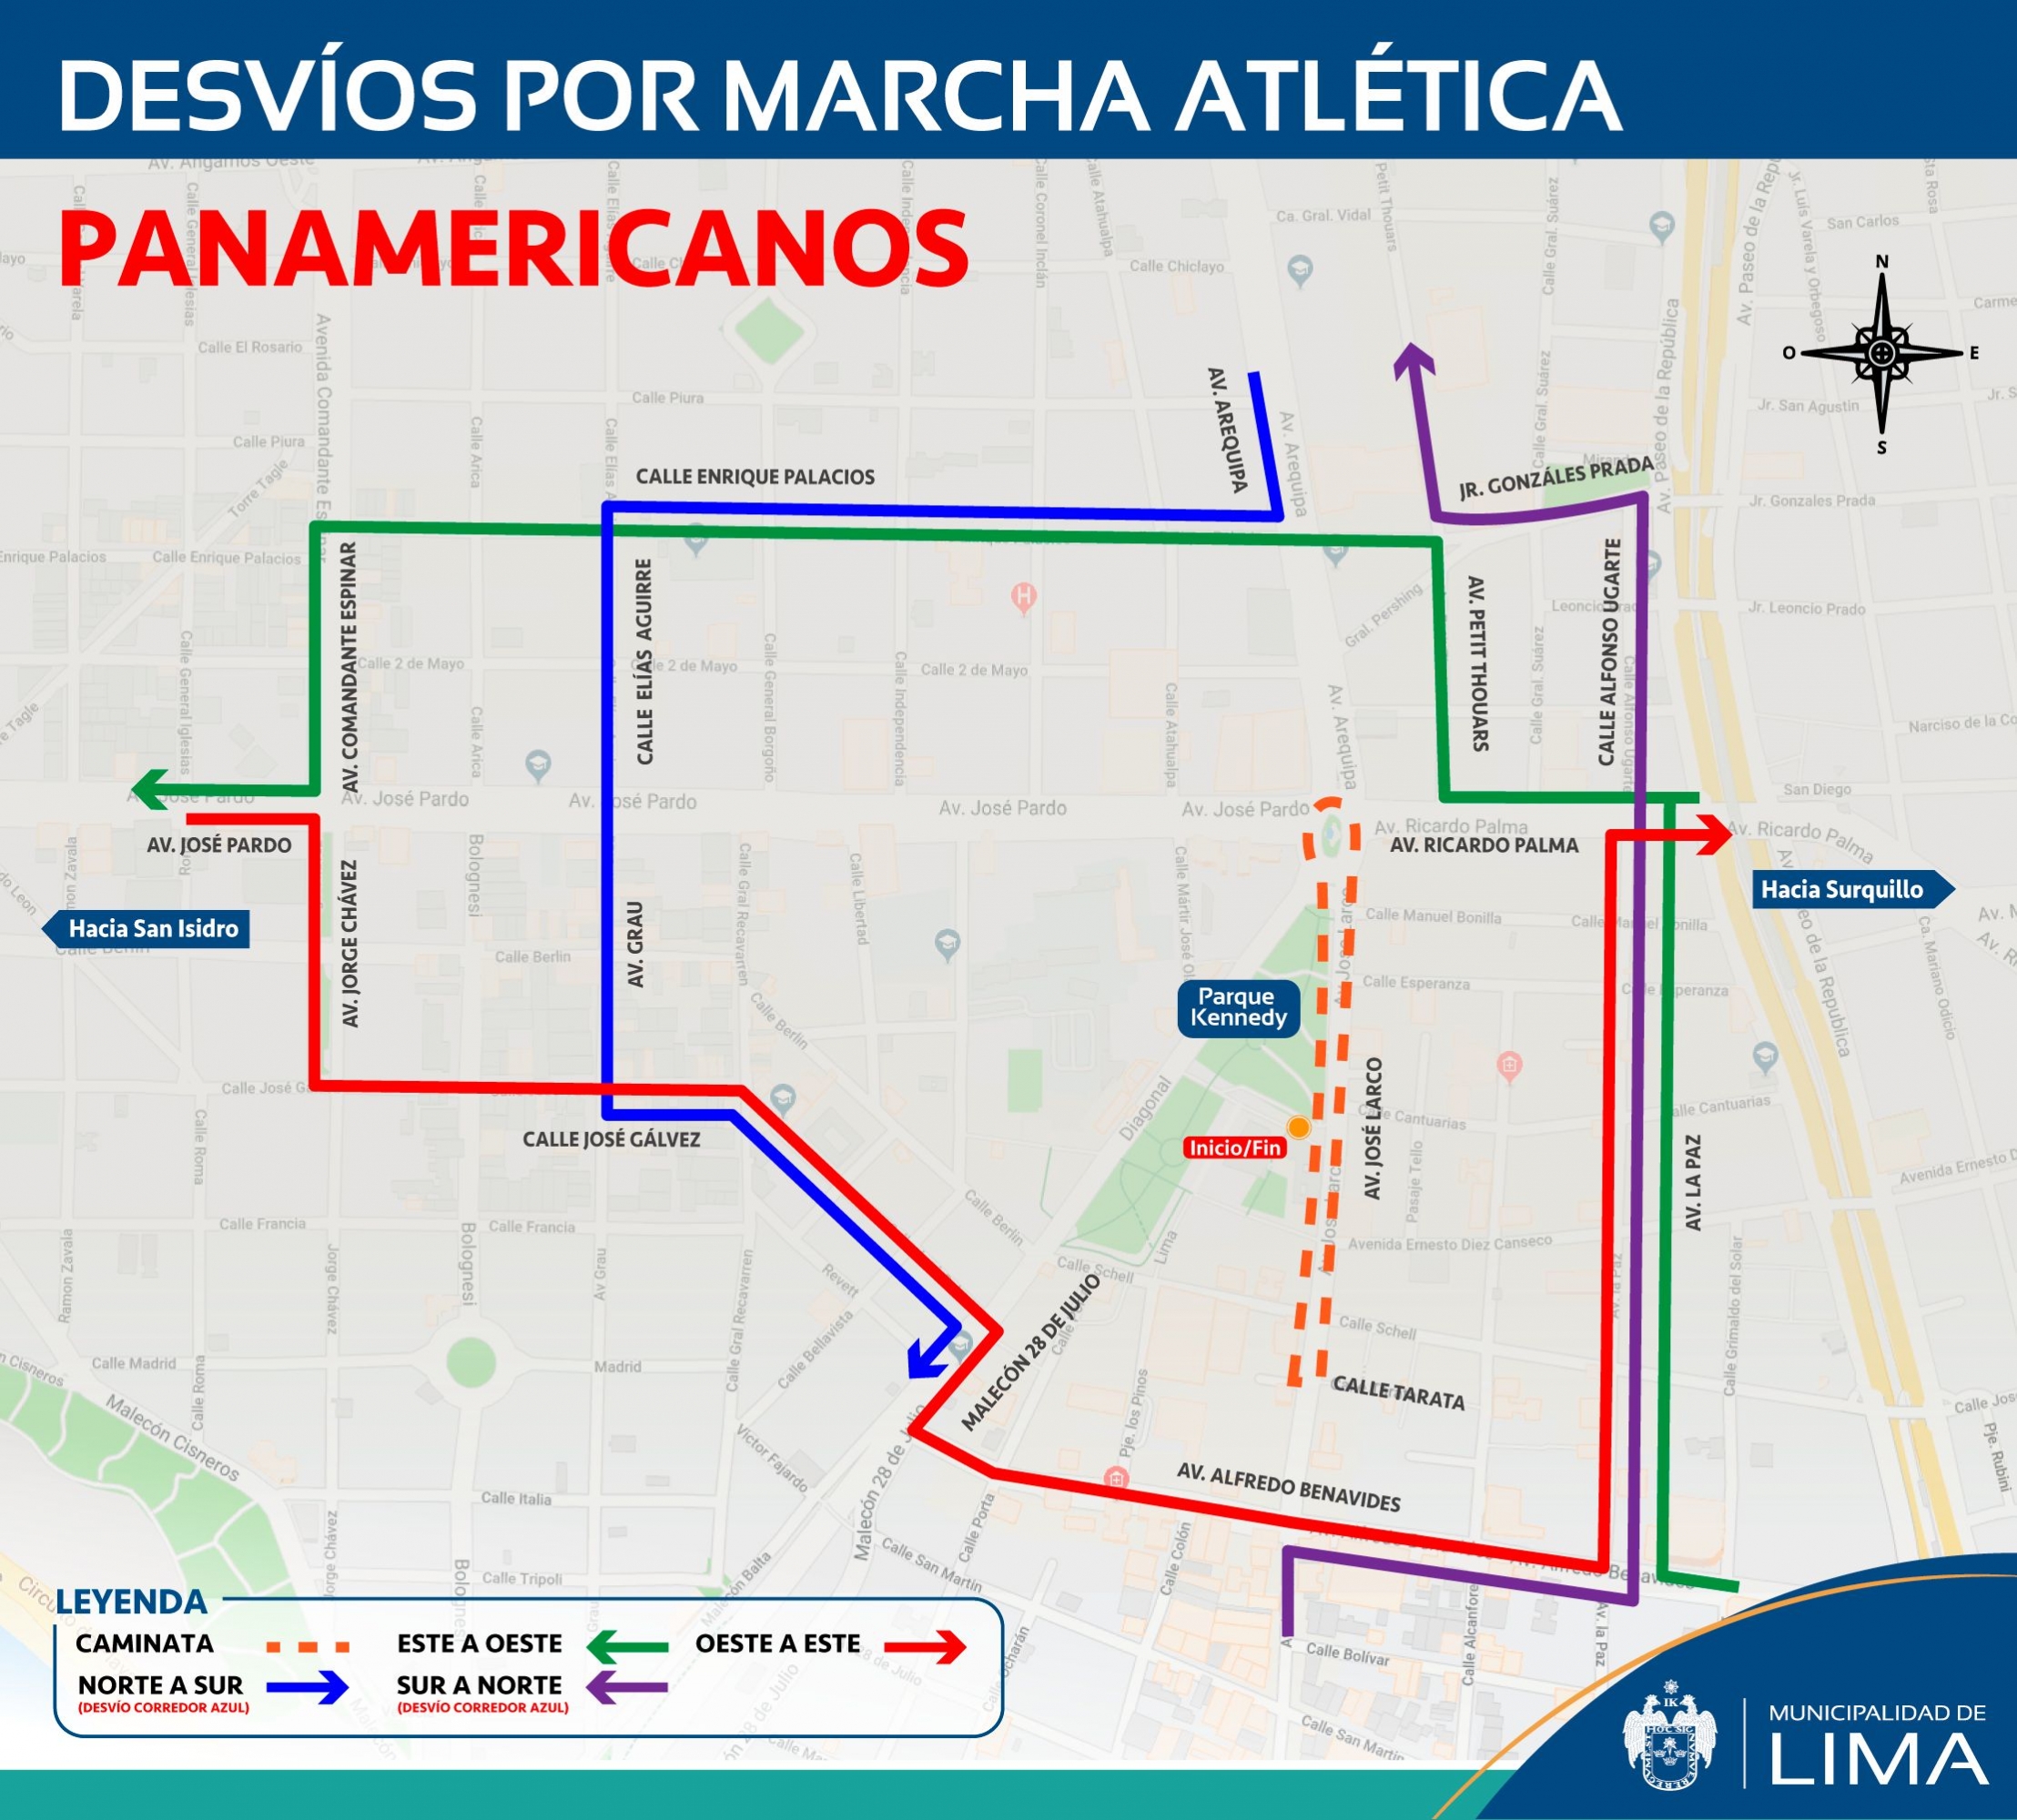 Este es el plan de desvíos vehicular que implementará la Municipalidad de Lima para facilitar la realización de marchas atléticas en Miraflores. (Difusión)